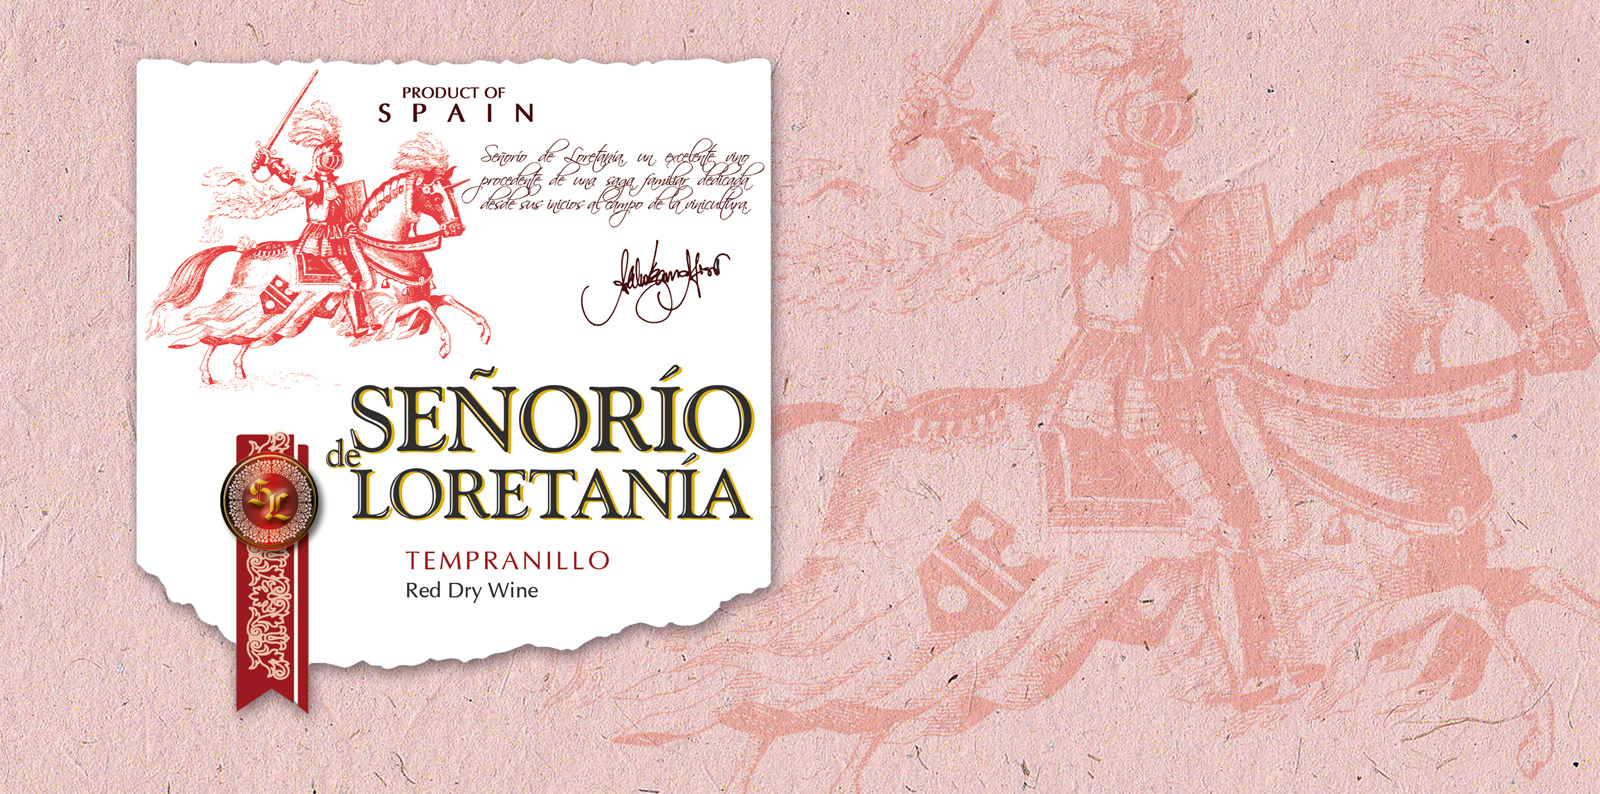 Portfolio of creative graphic design jobs creating classic labels for wine cellars